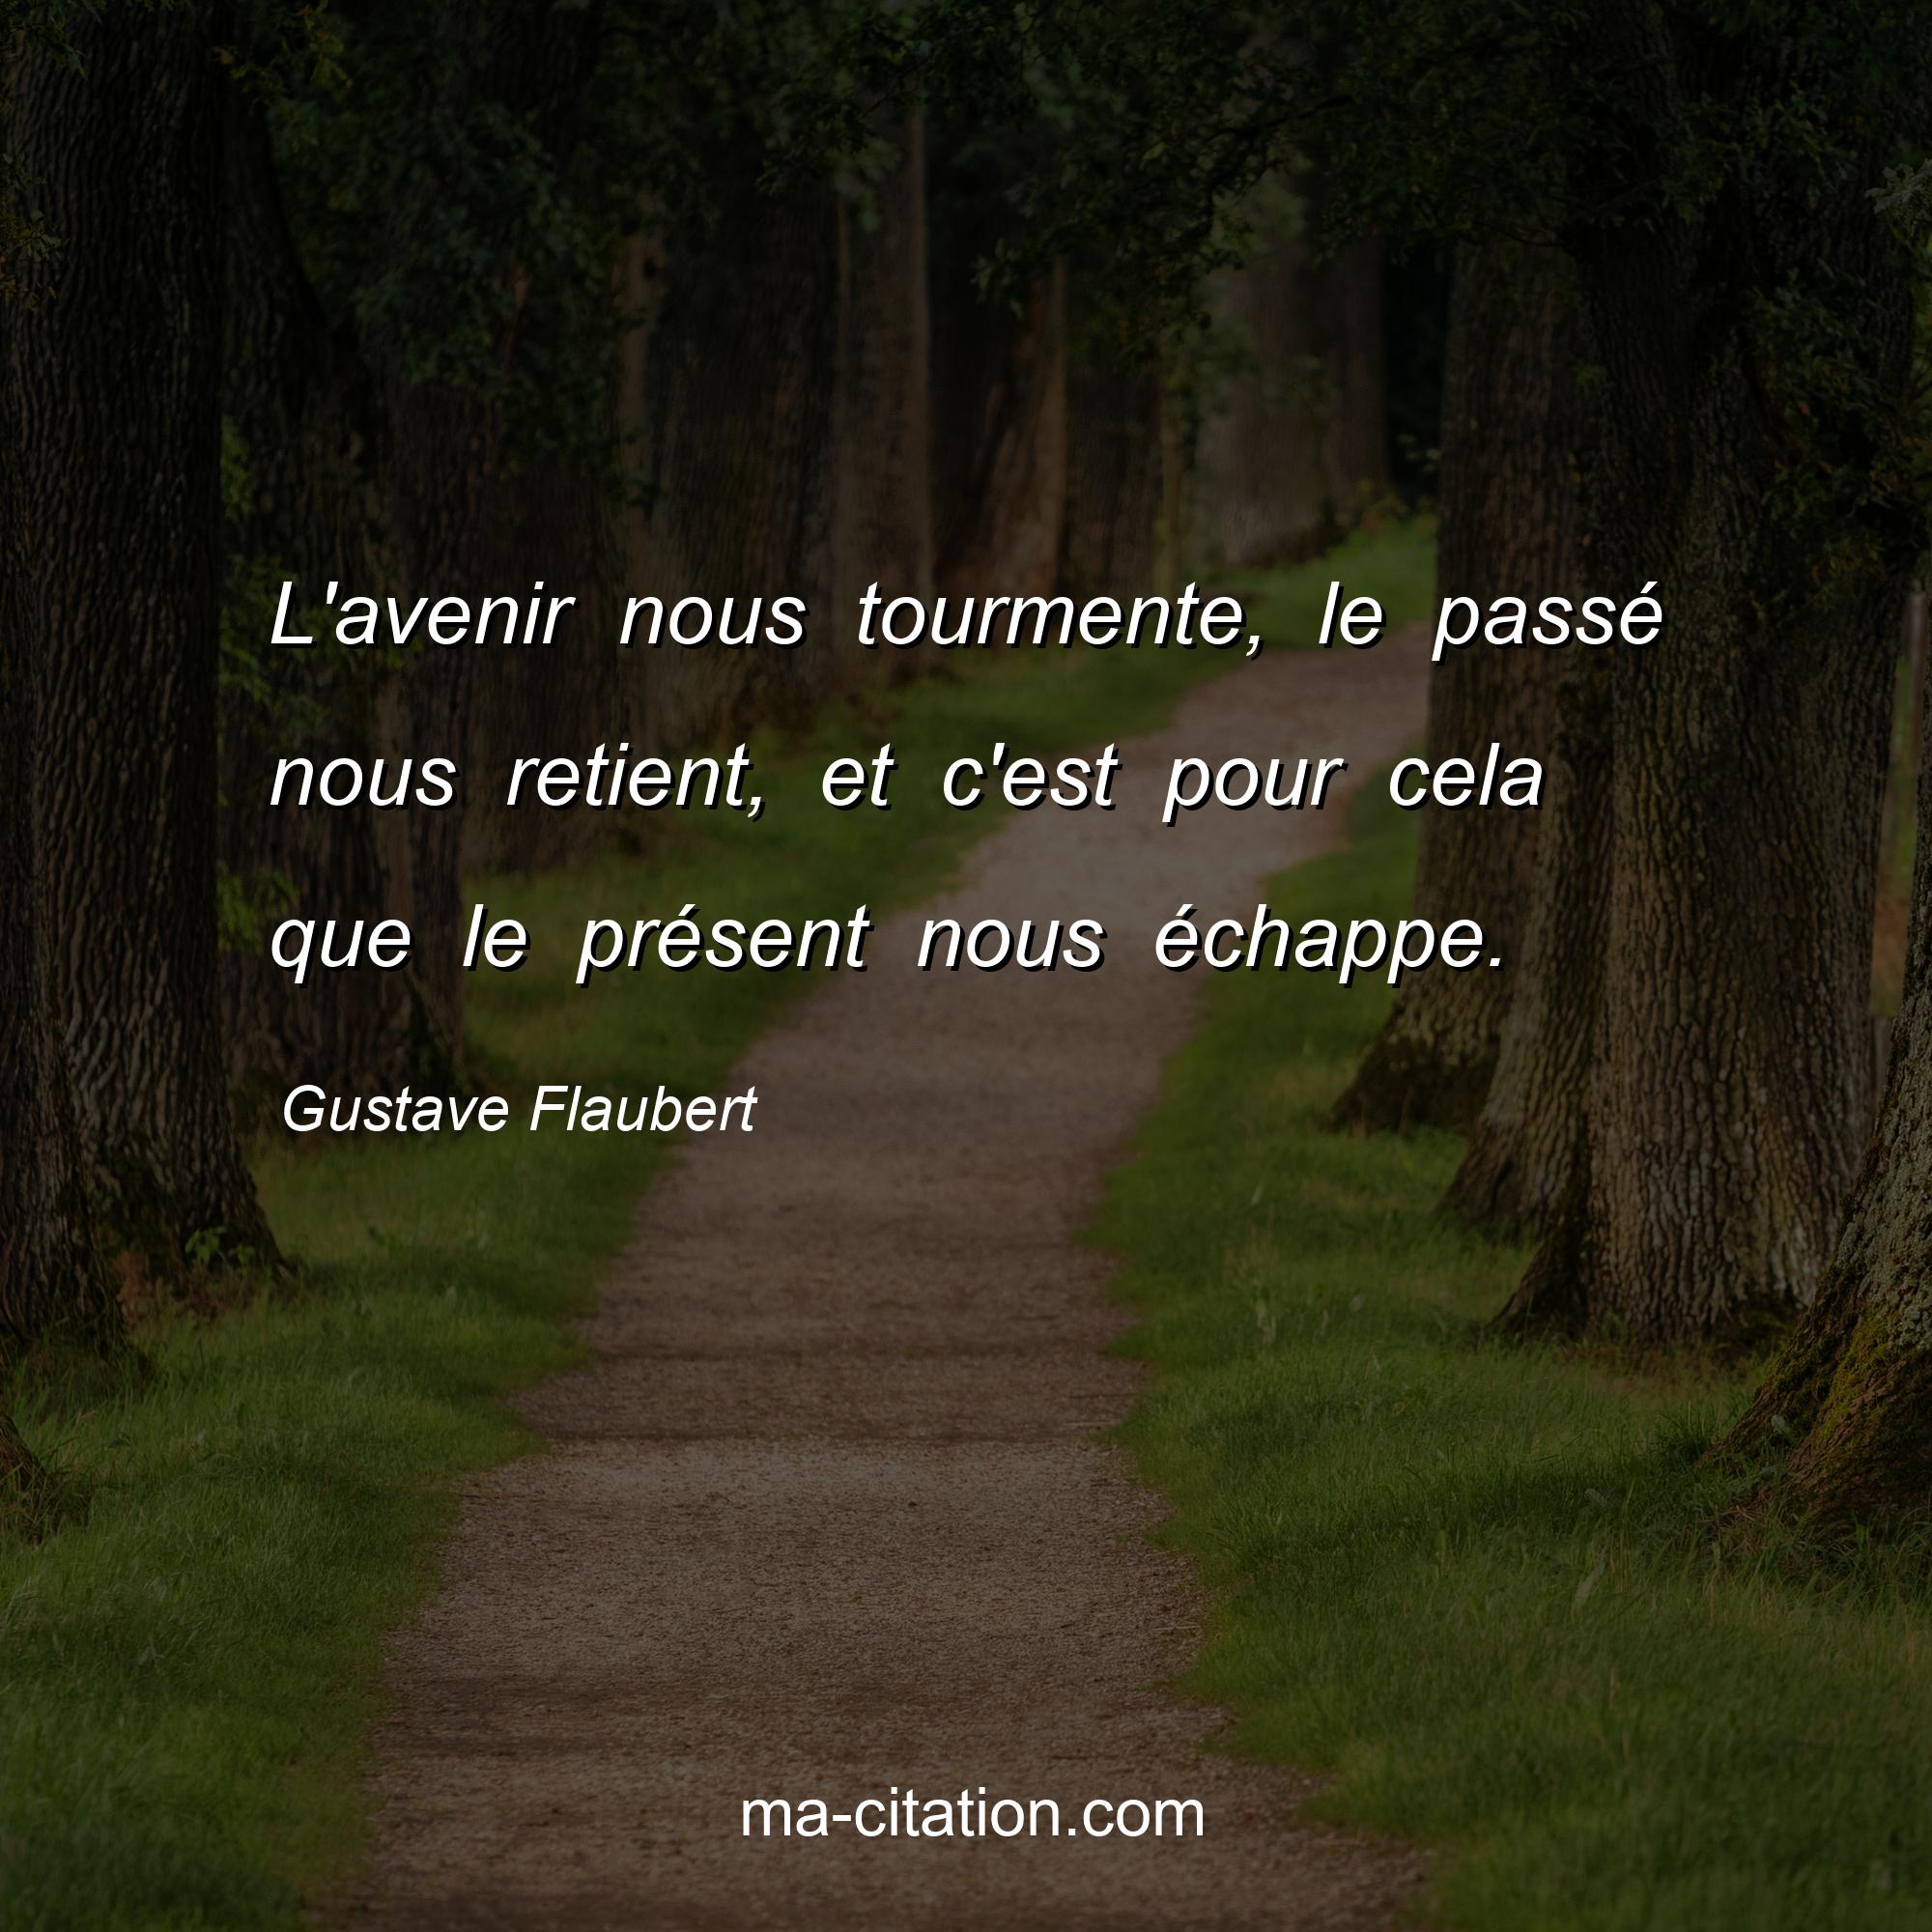 Gustave Flaubert : L'avenir nous tourmente, le passé nous retient, et c'est pour cela que le présent nous échappe.